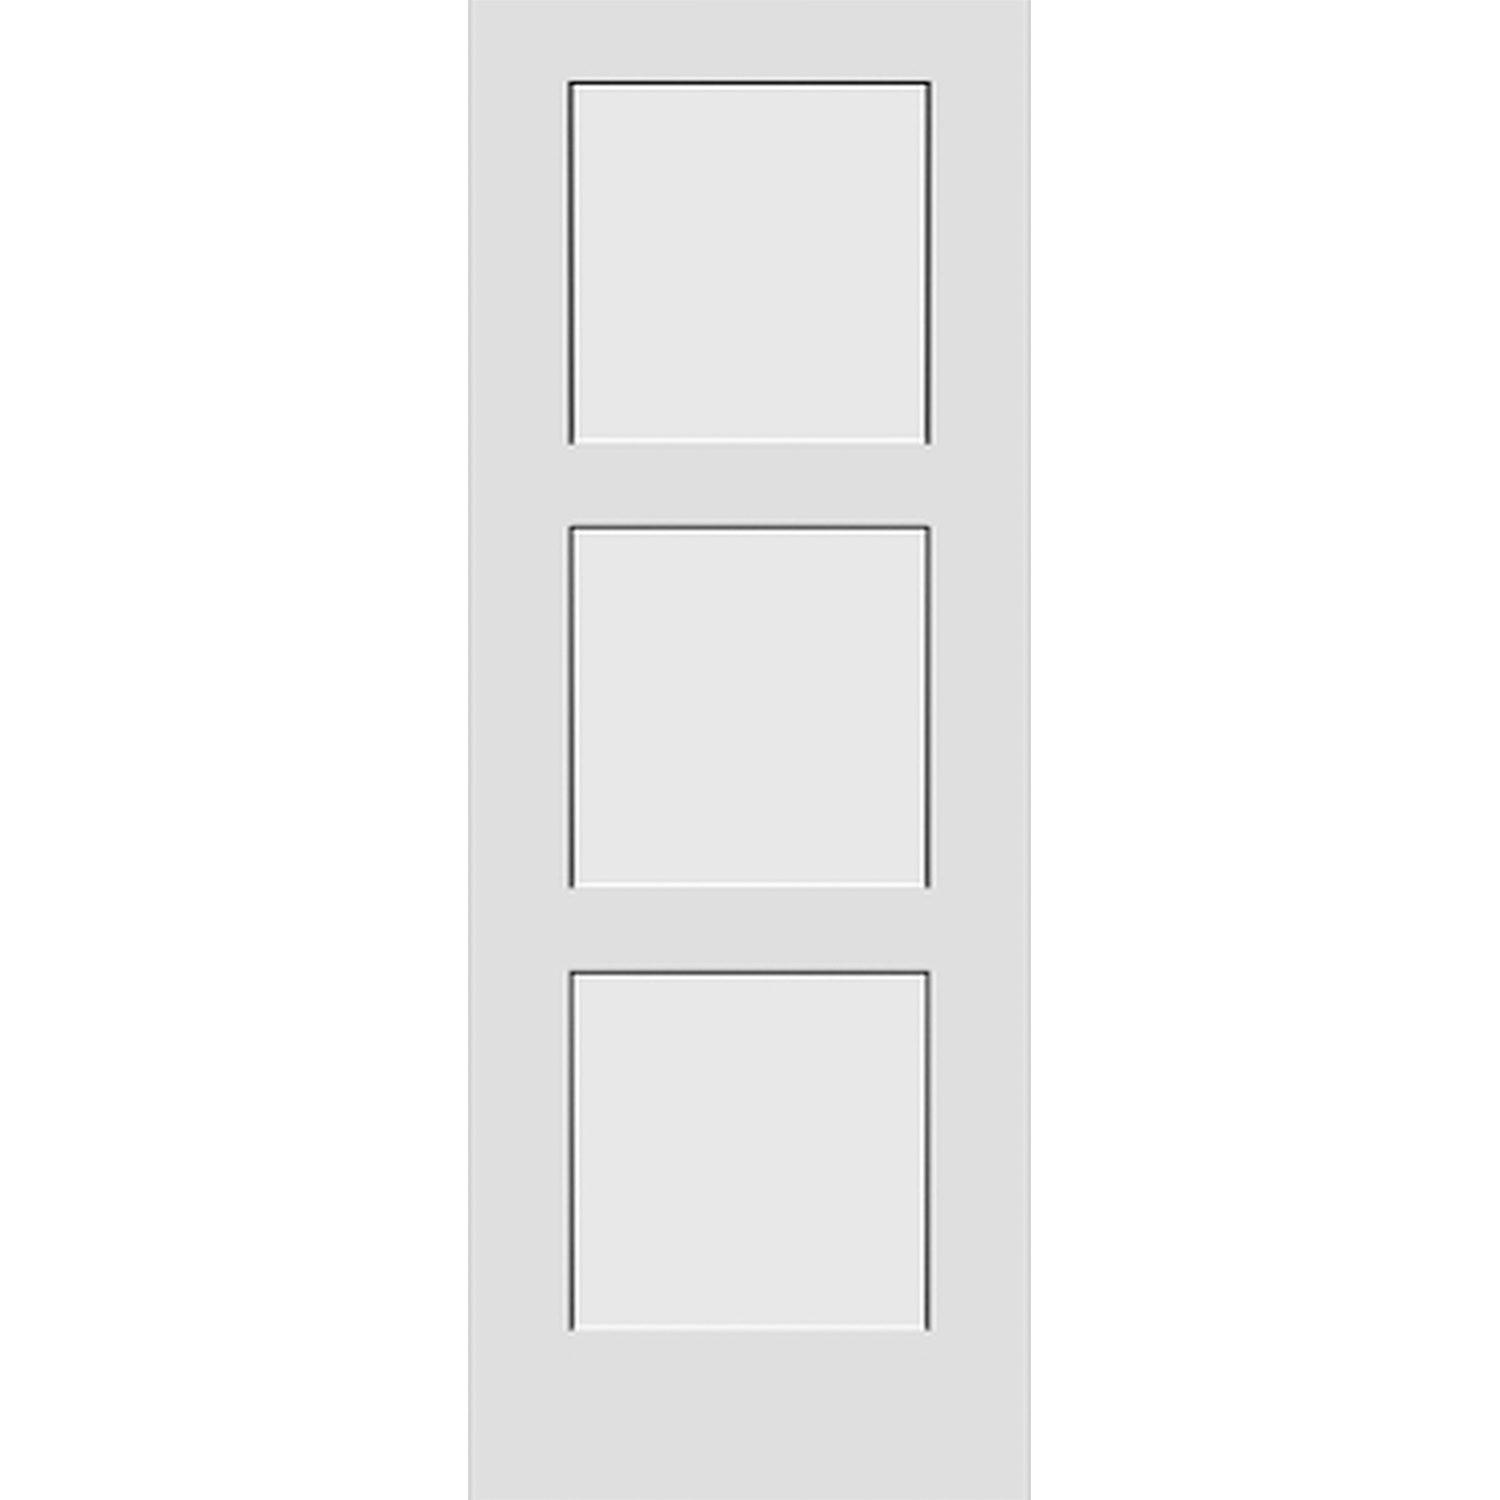 3 Panel Solid Door - 30 x 80